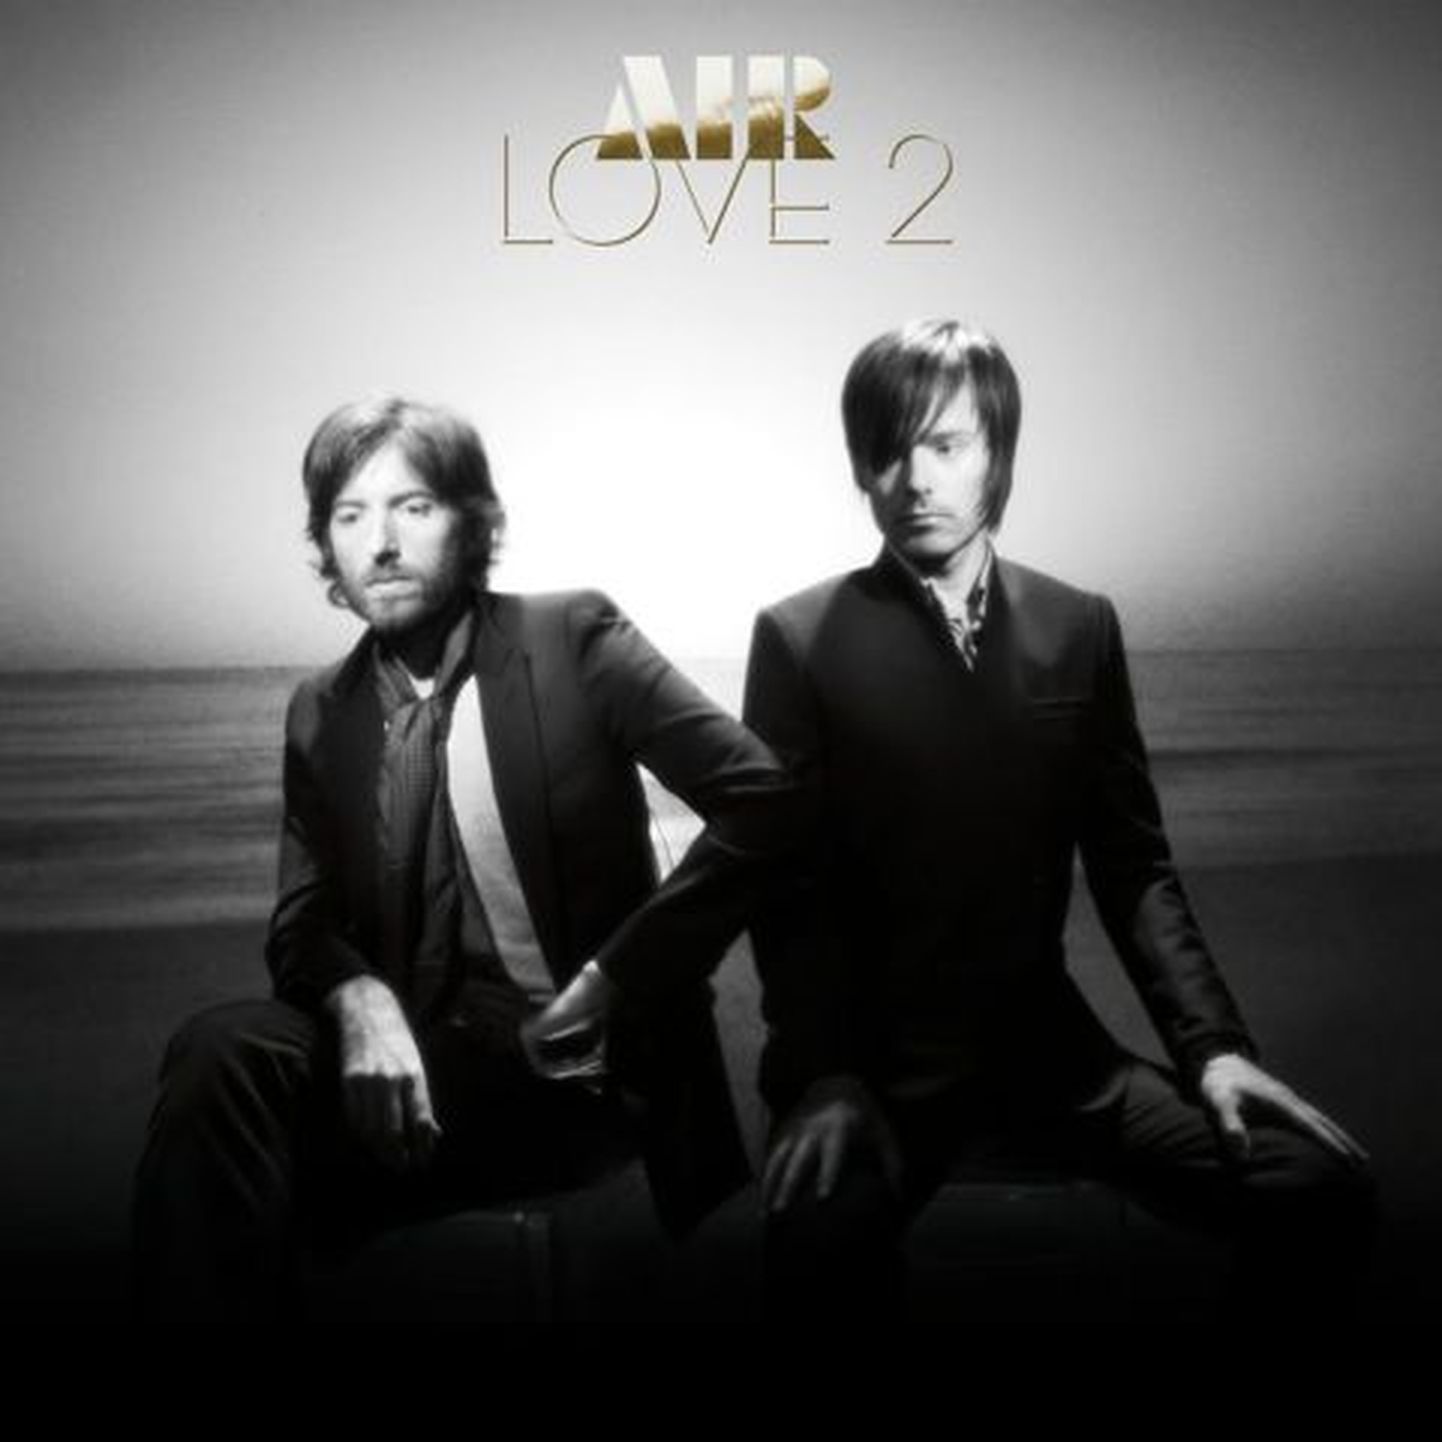 Air "Love 2".